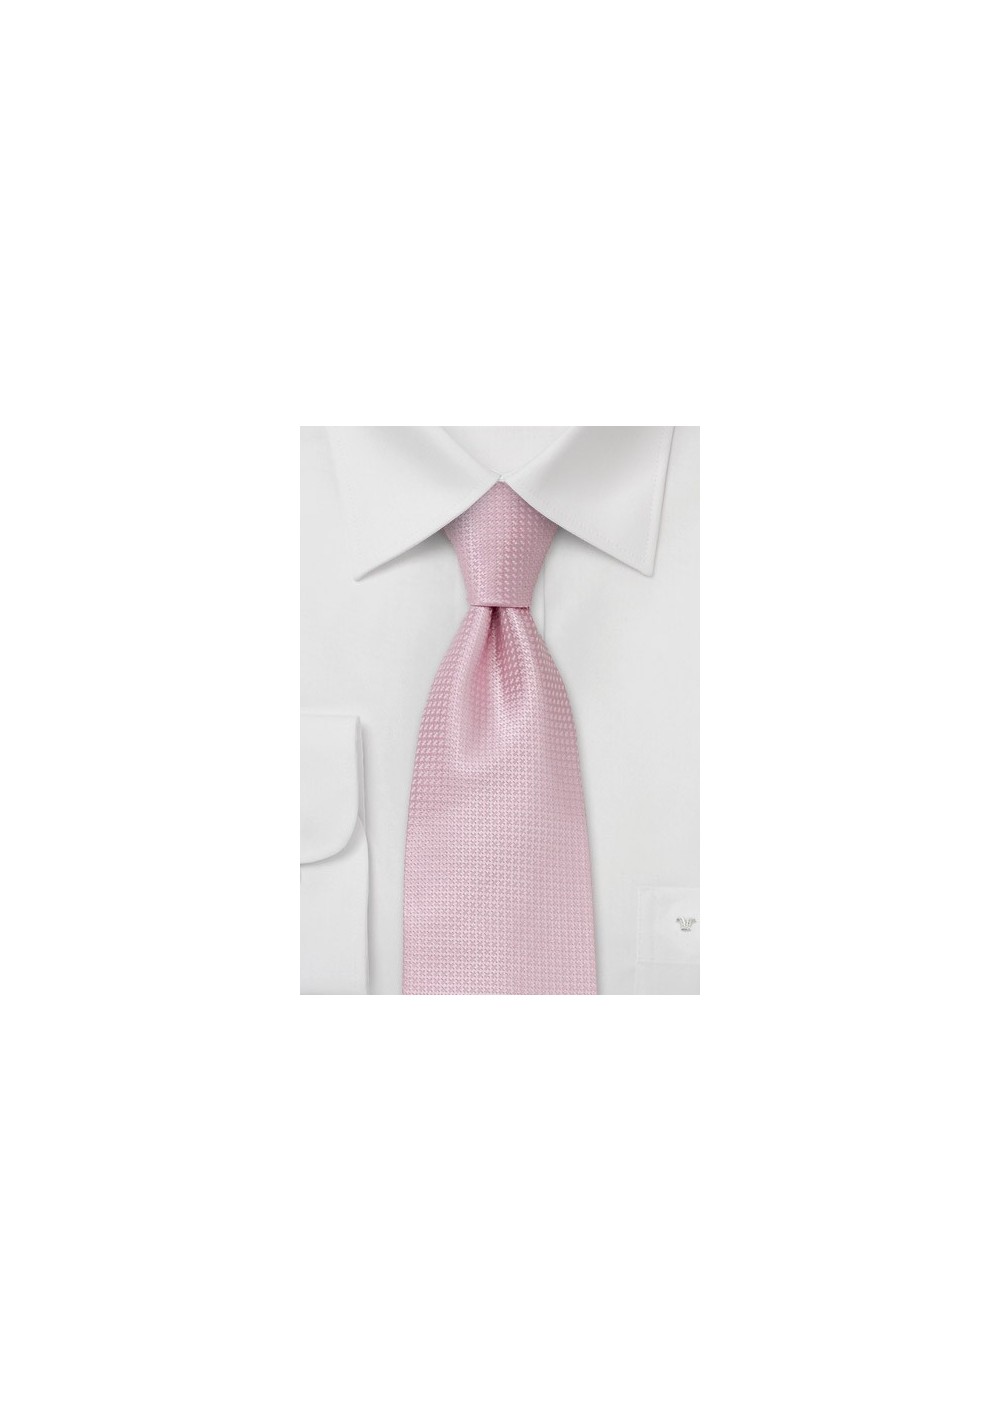 Pink Extra Long Ties - Light Pink Necktie in XL